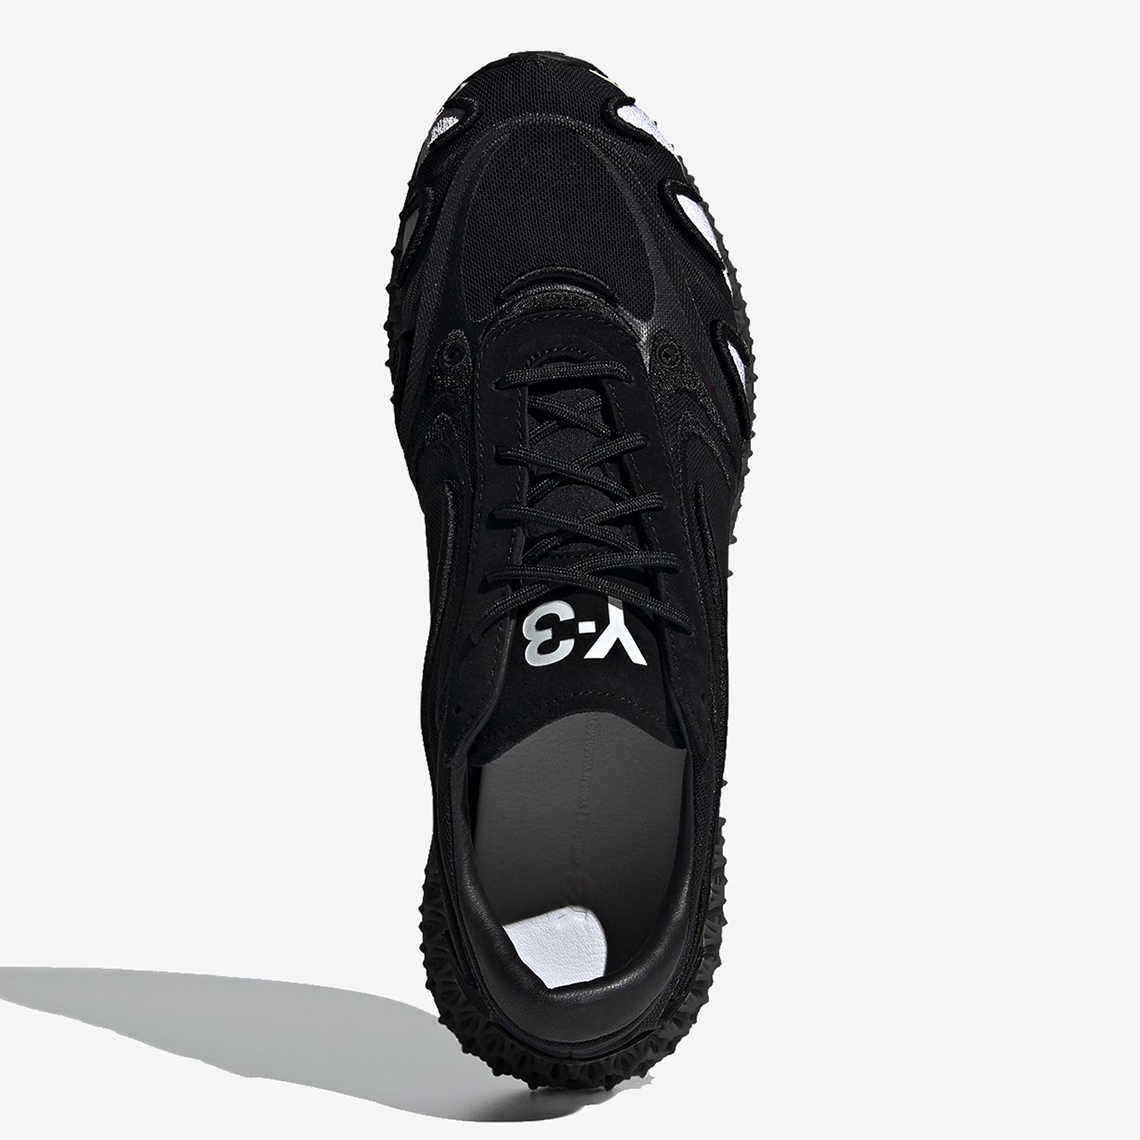 Adidas Y 3 Runner 4d Fu9207 Black Release Date 4